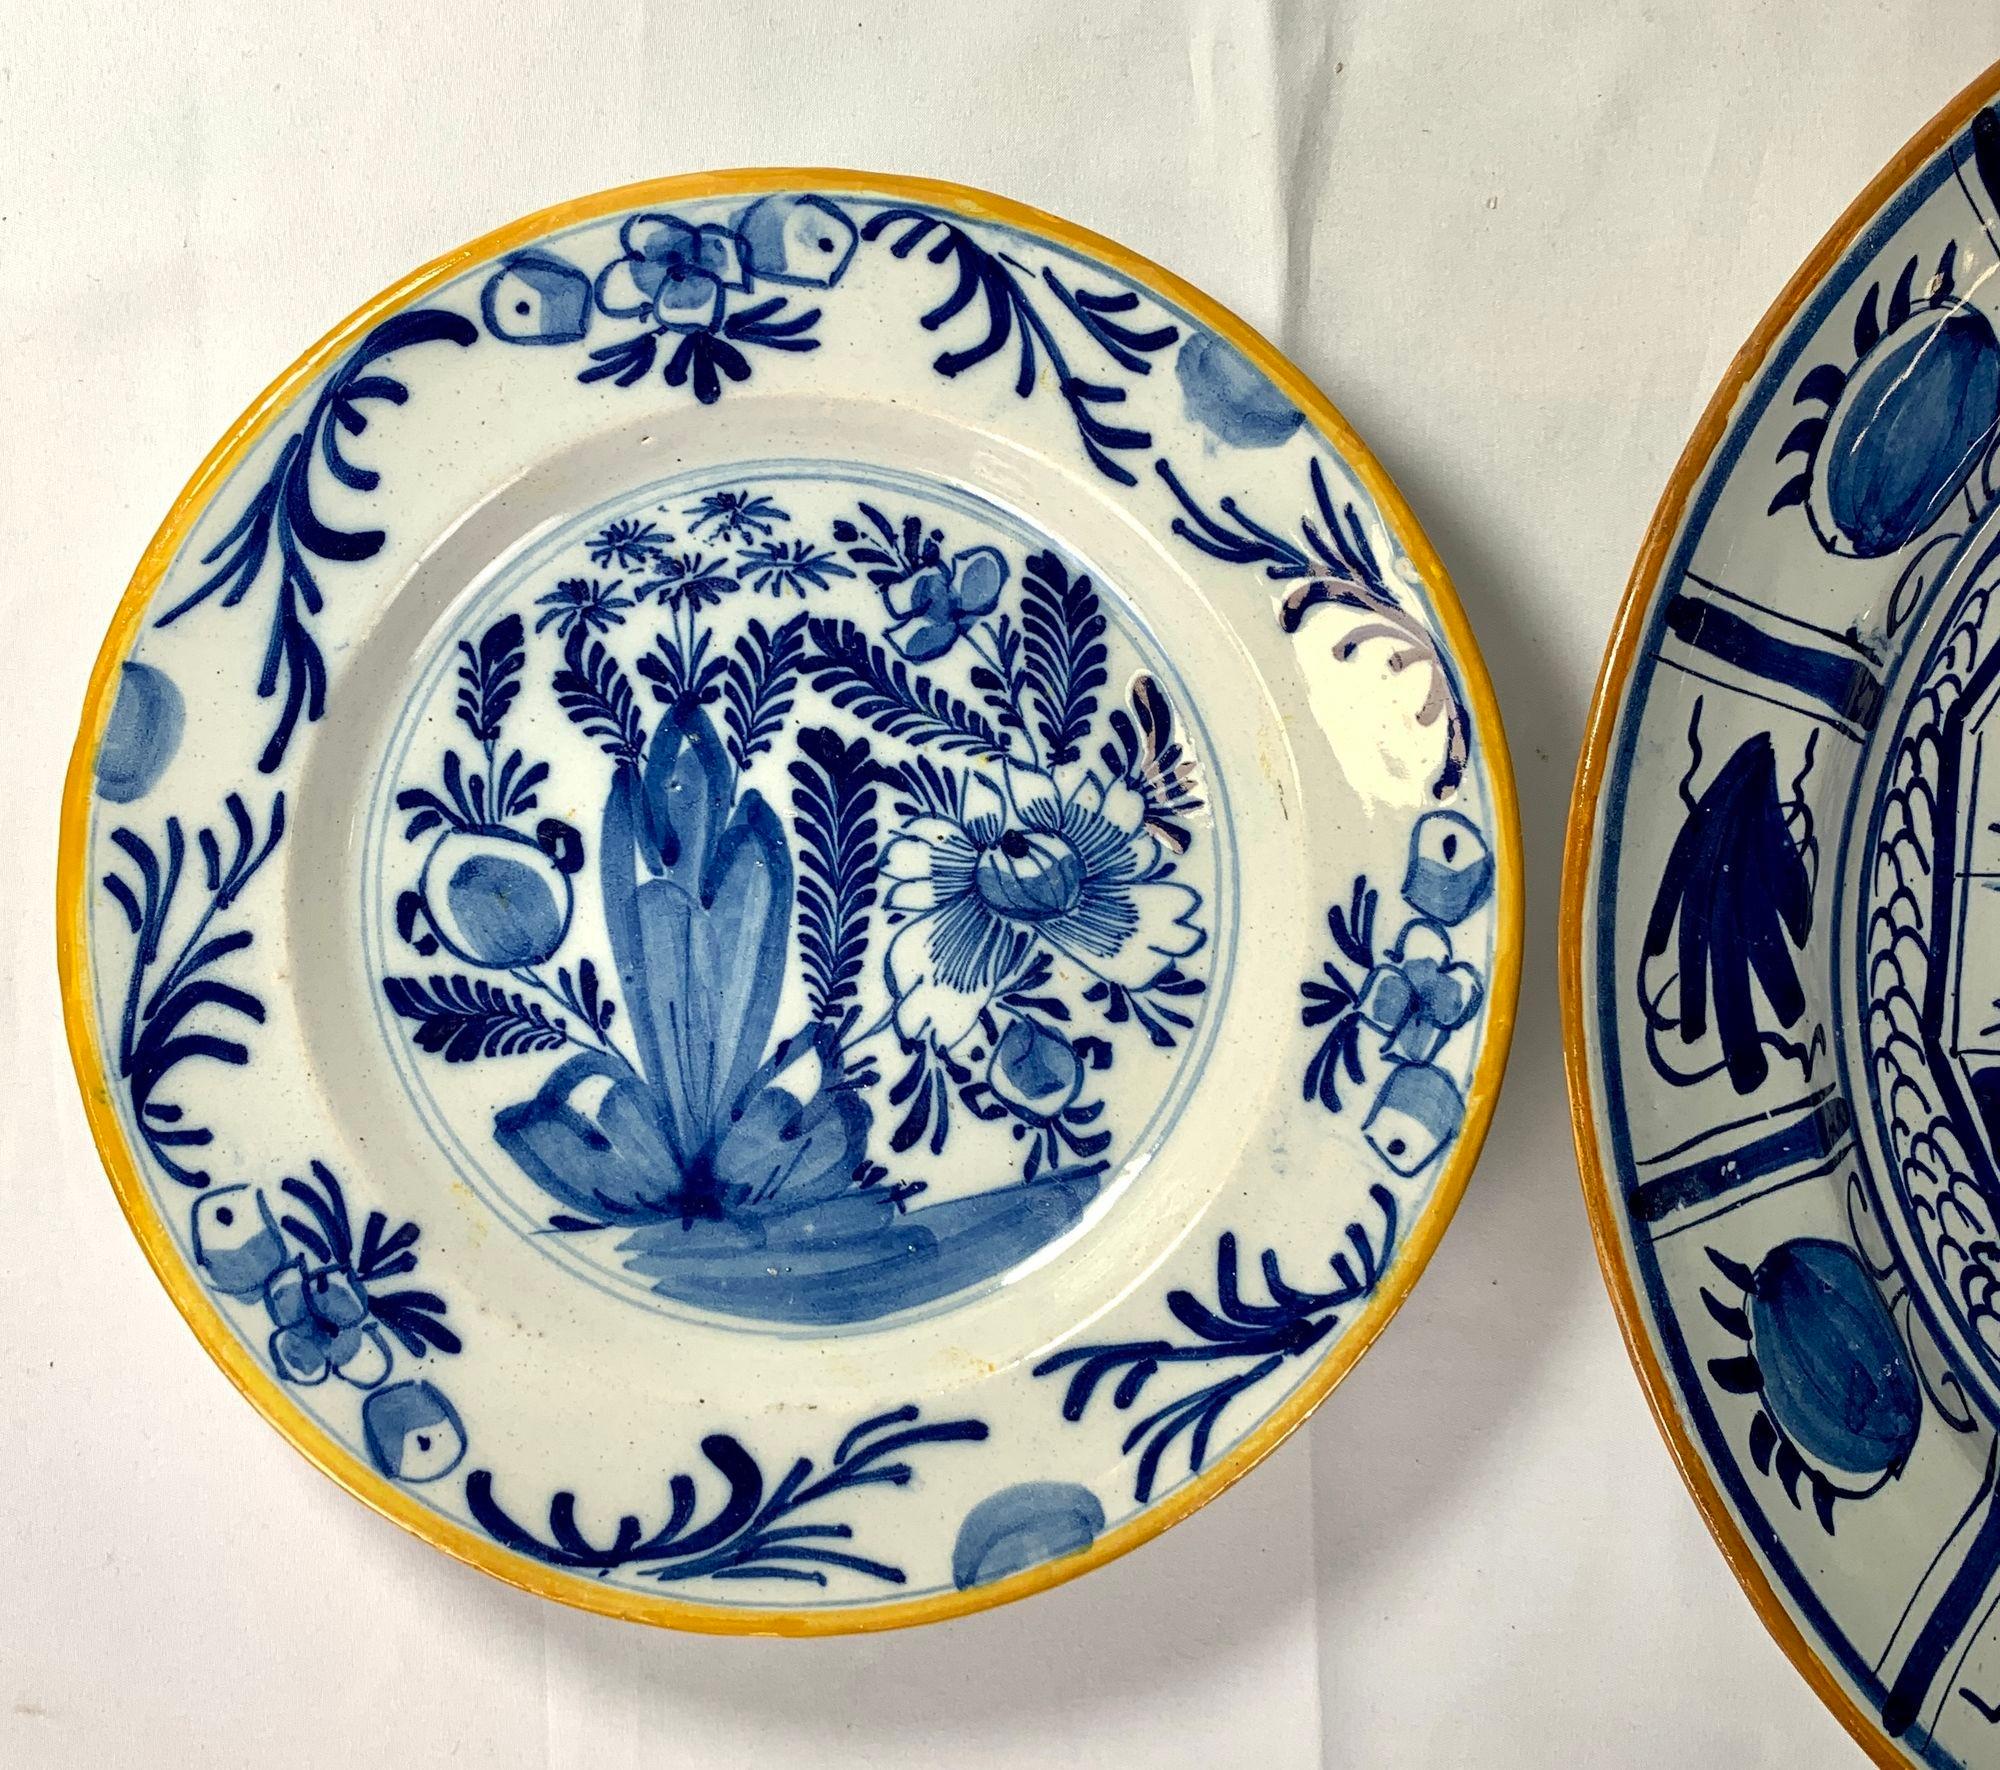 Diese hübsche Gruppe von handgemalten blauen und weißen Tellern aus dem niederländischen Delft zeigt traditionelle Szenen aus dem Delft des 18.
Jeder Teller ist kobaltblau bemalt und hat einen traditionellen gelben oder ockerfarbenen Rand.
In der